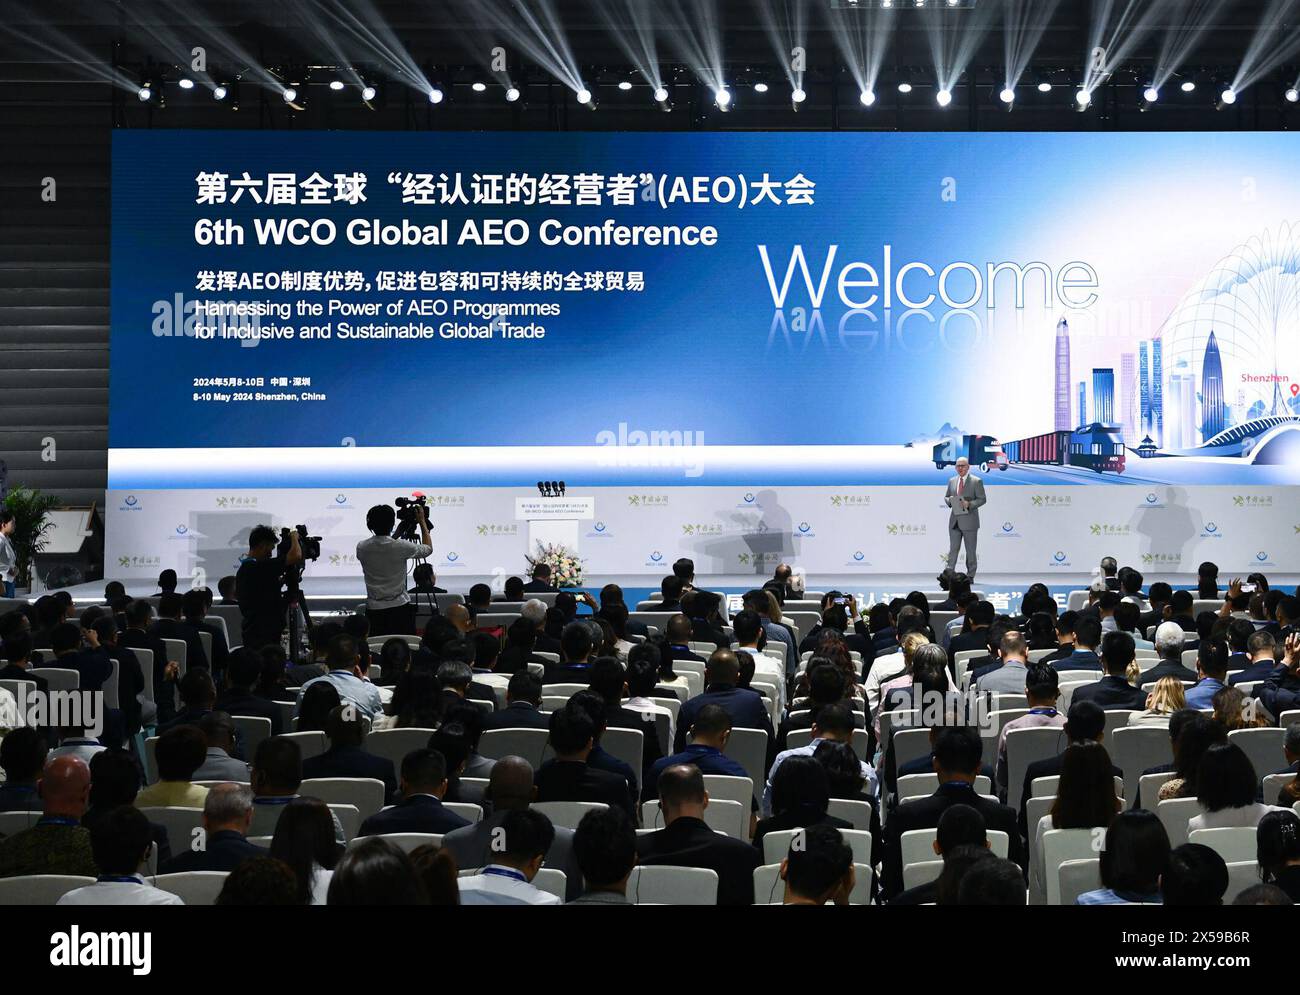 SHENZHEN, 8 maggio 2024 (Xinhua) -- gli ospiti partecipano alla cerimonia di apertura della 6a Conferenza dell'operatore economico autorizzato globale (AEO) dell'Organizzazione Mondiale delle dogane (WCO) a Shenzhen, nella provincia del Guangdong della Cina meridionale, 8 maggio 2024. Mercoledì si è aperta a Shenzhen la 6a conferenza mondiale dell'OMD. La conferenza, ospitata dall'OMD e co-ospitata dall'Amministrazione generale delle dogane (GAC) della Cina e dal governo municipale di Shenzhen, durerà tre giorni sul tema "sfruttare il potere dei programmi AEO per un commercio globale inclusivo e sostenibile". Più di 1.200 d. Foto Stock